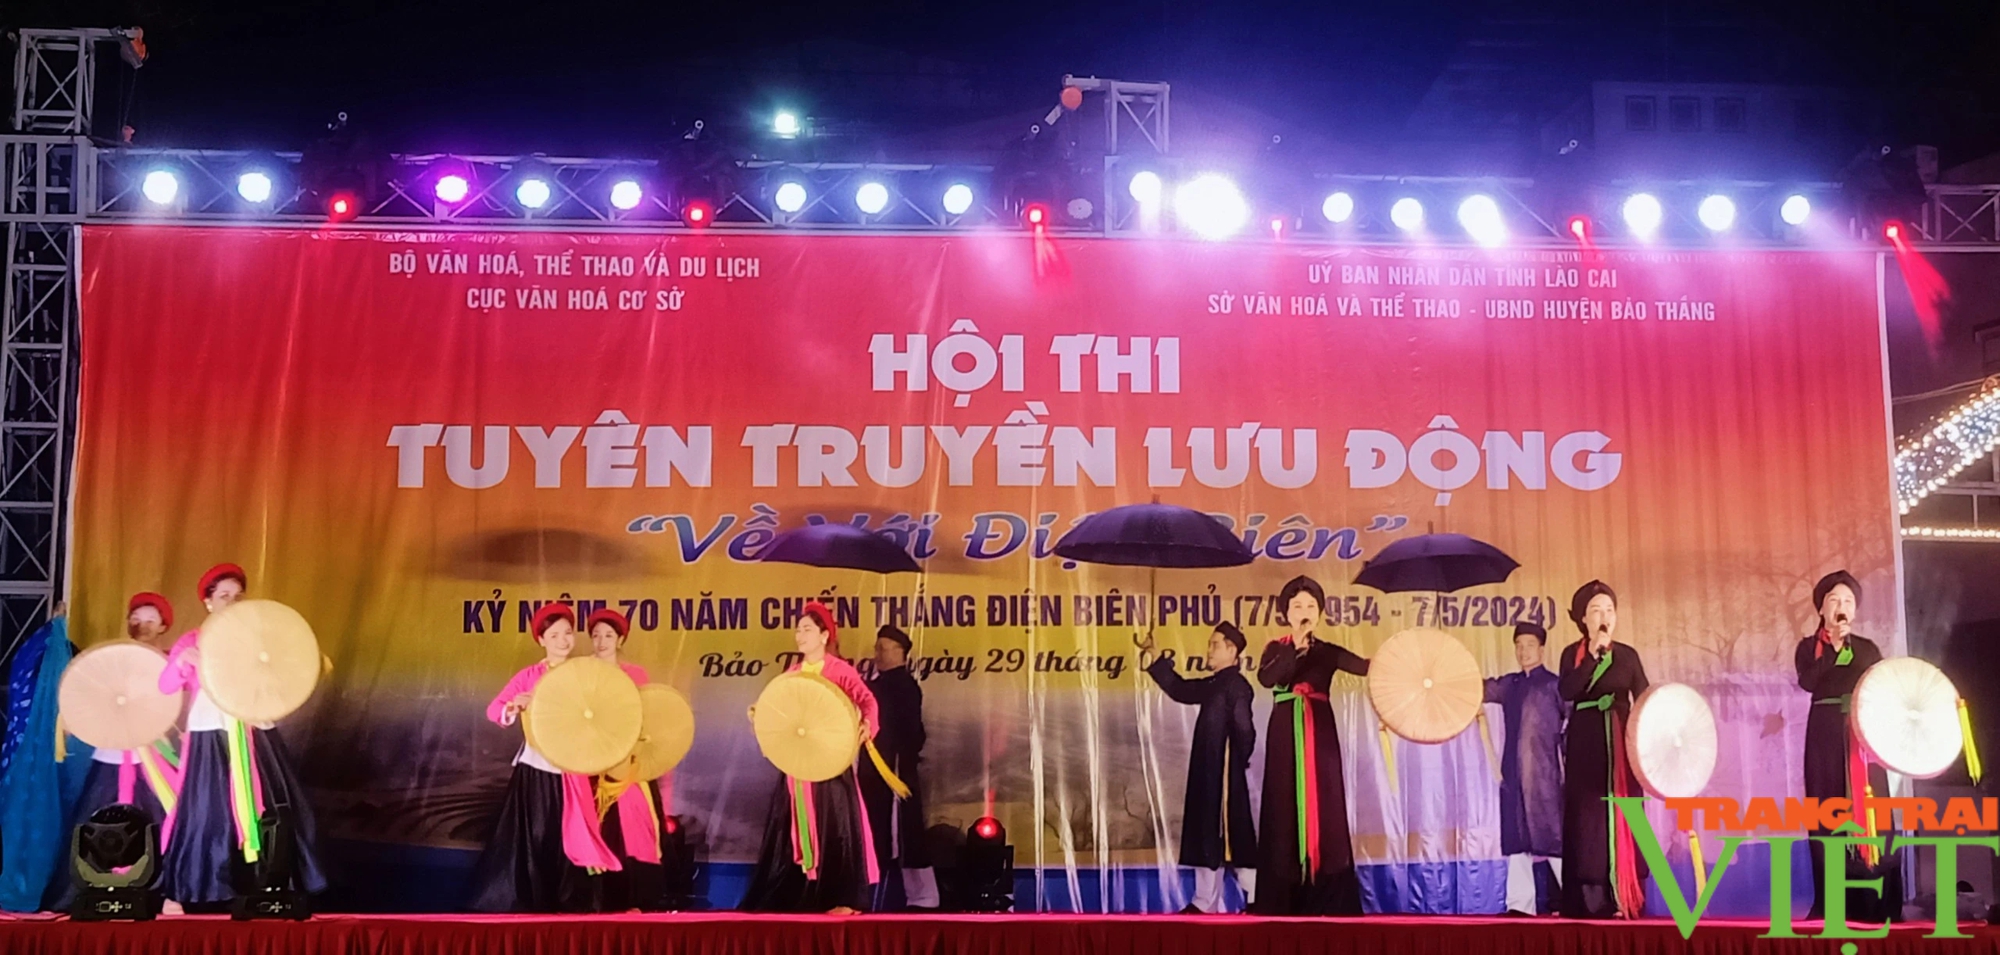 Tưng bừng hội thi "Về với Điện Biên" ở một huyện của Lào Cai, thu hút hàng nghìn khán giả- Ảnh 5.